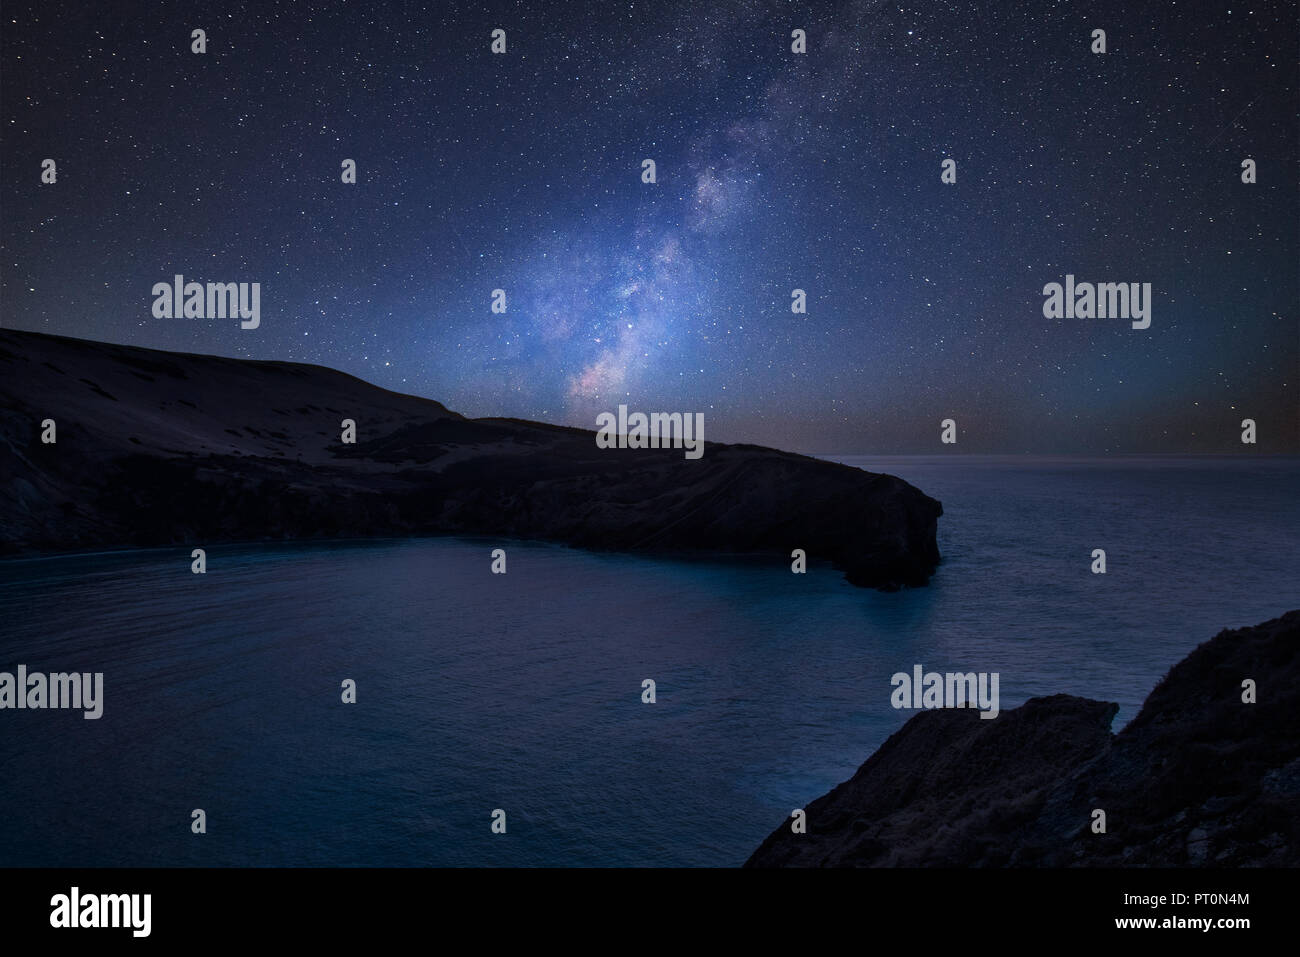 Impresionante vibrante Vía Láctea imagen compuesta a lo largo de paisajes de costa rocosa Foto de stock